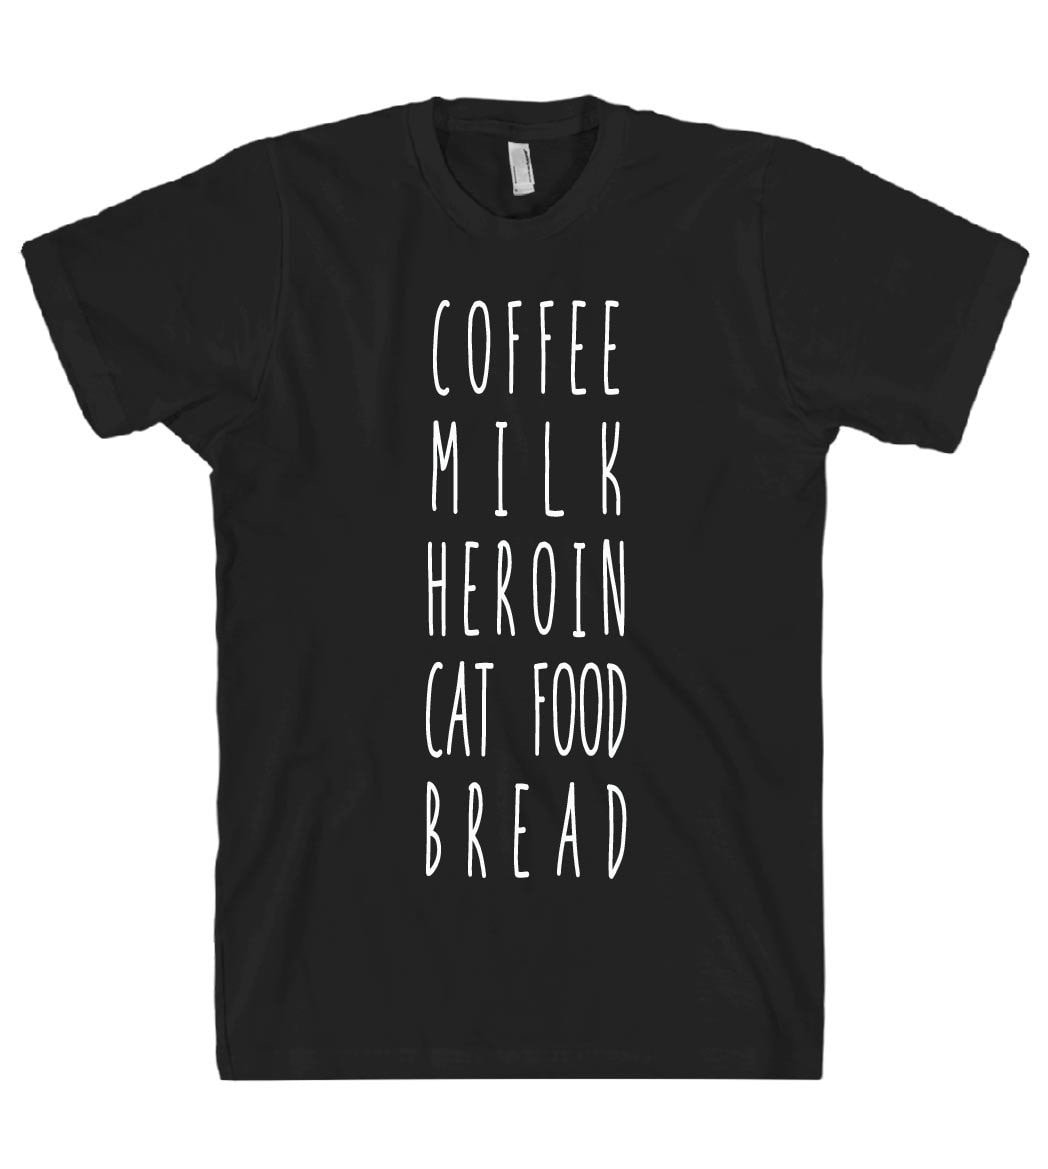 COFFEE MILK HEROIN CAT FOOD BREAD TSHIRT - Shirtoopia